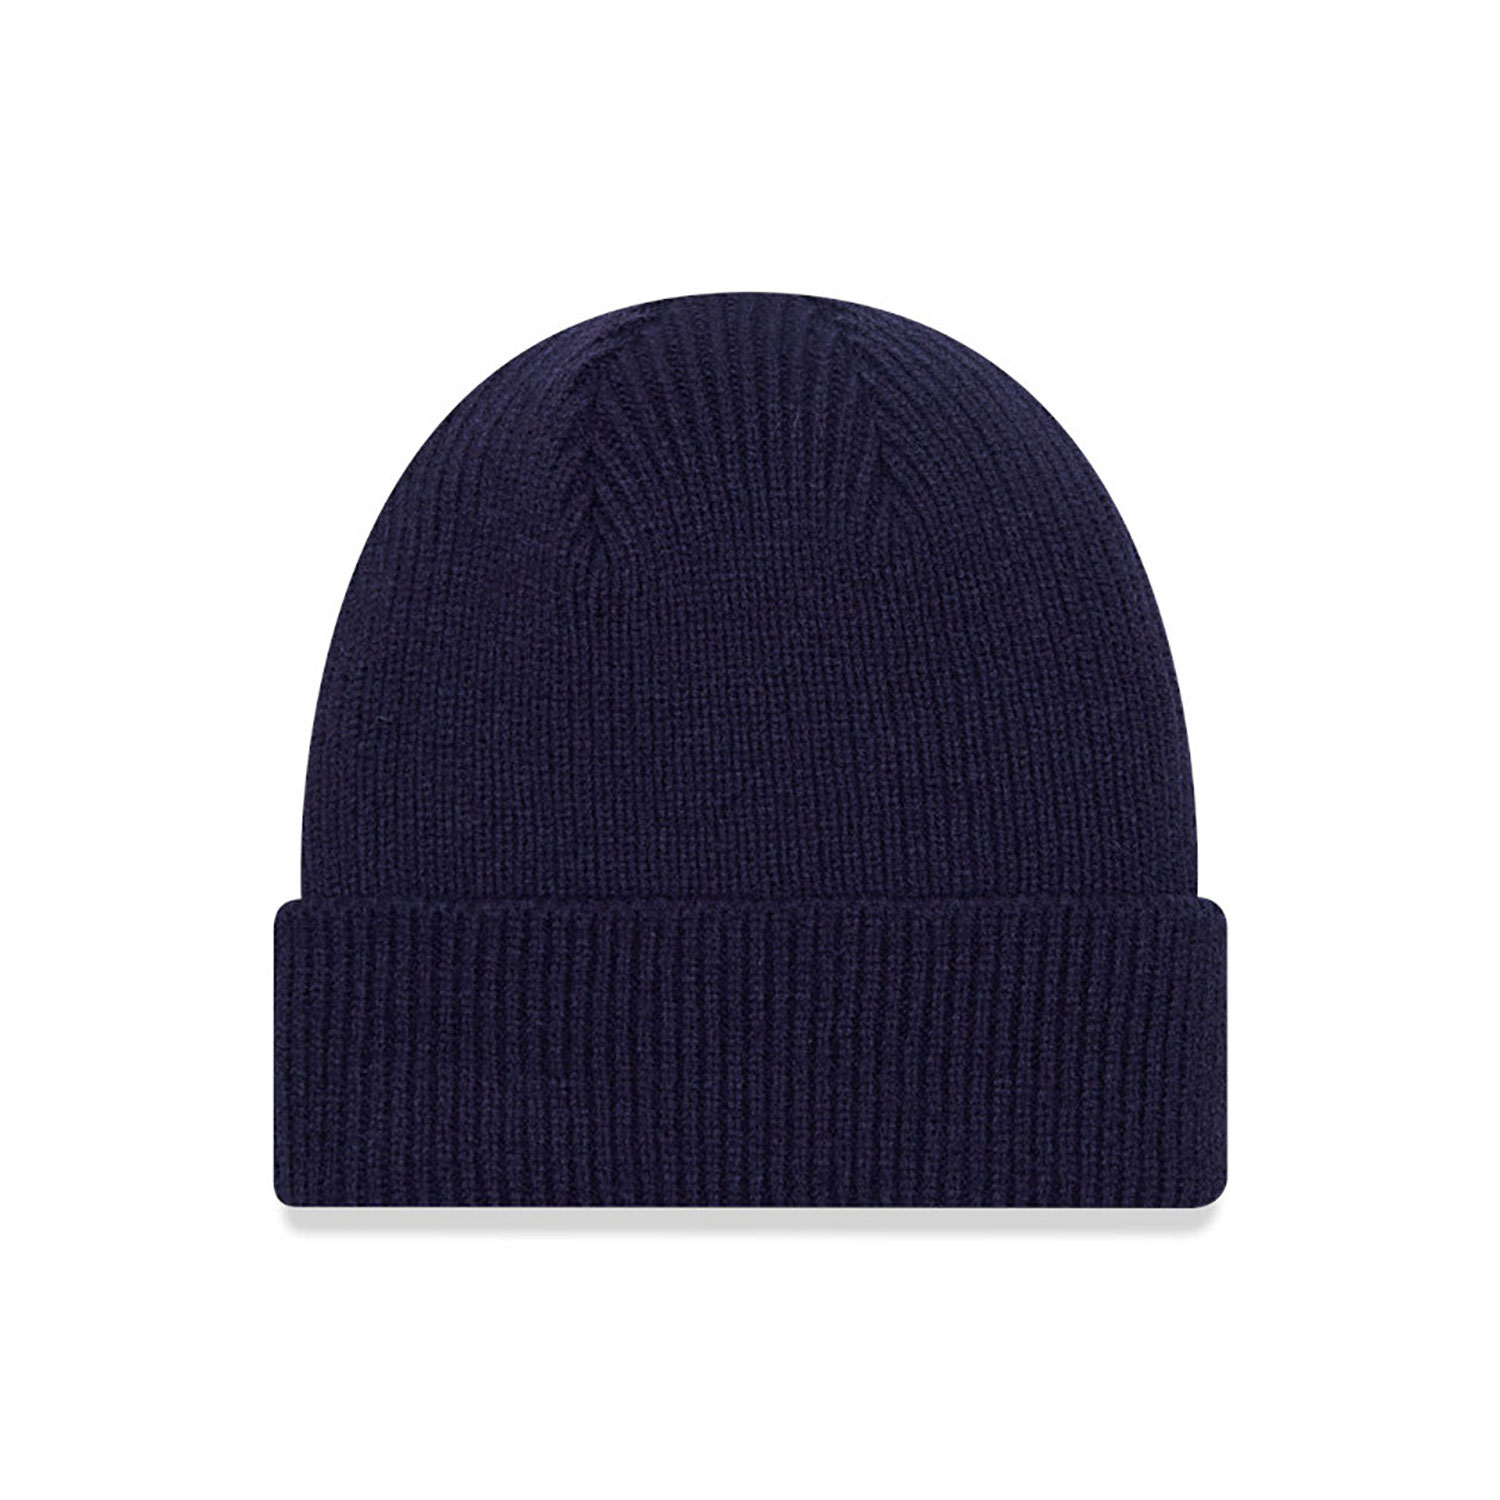 New Era Wool Navy Cuff Knit Beanie Hat